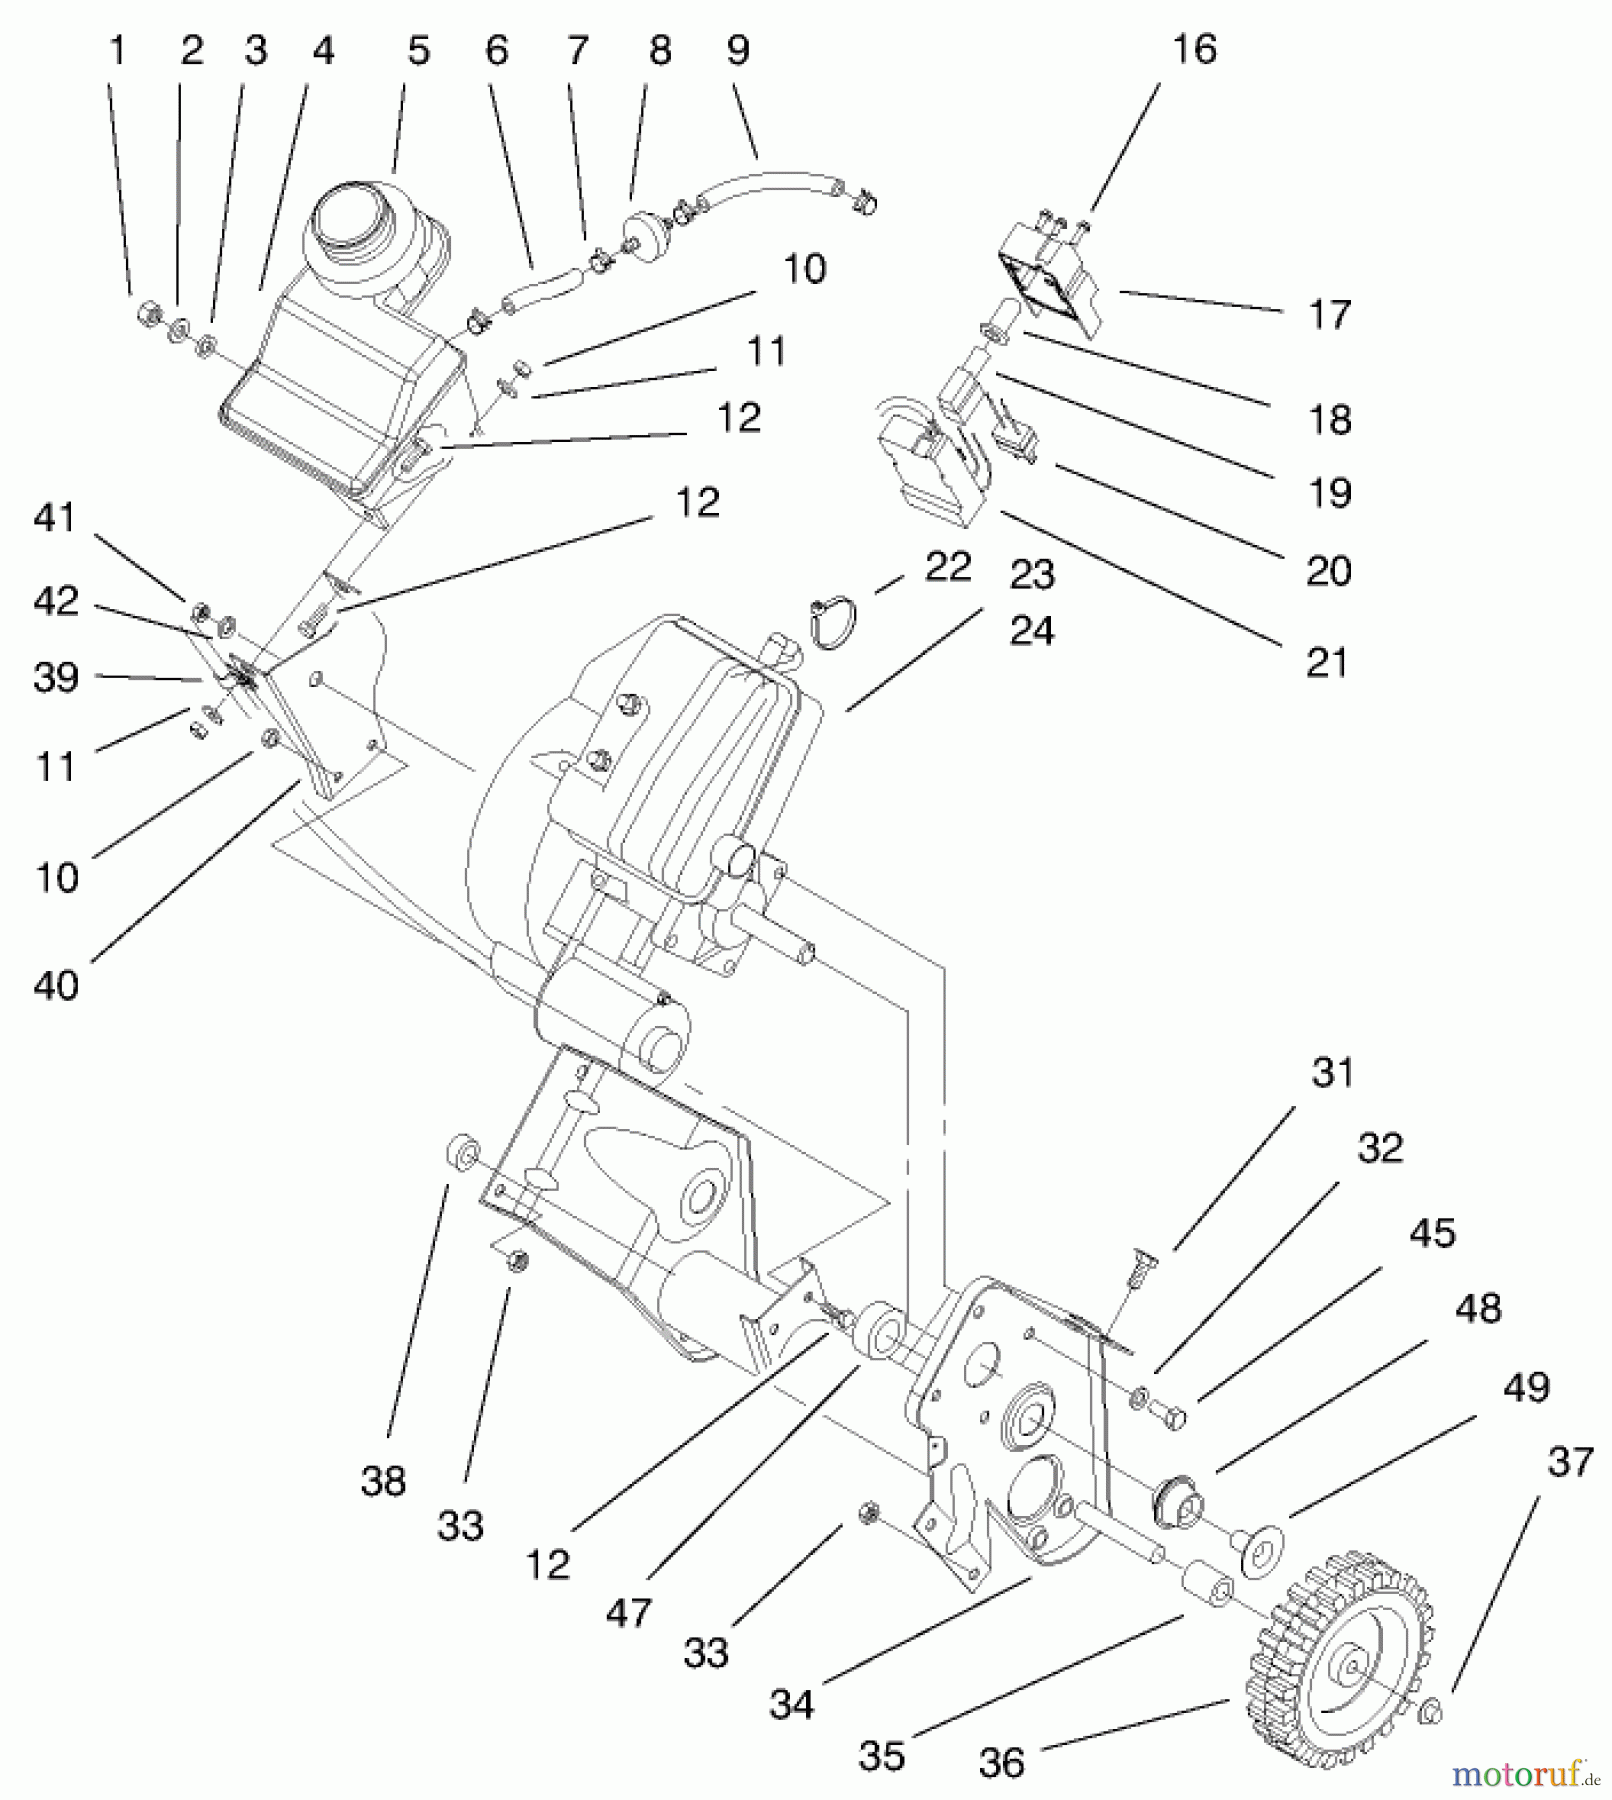  Toro Neu Snow Blowers/Snow Throwers Seite 1 38435 (3000) - Toro CCR 3000 Snowthrower, 1999 (9900001-9999999) ENGINE & GAS TANK ASSEMBLY